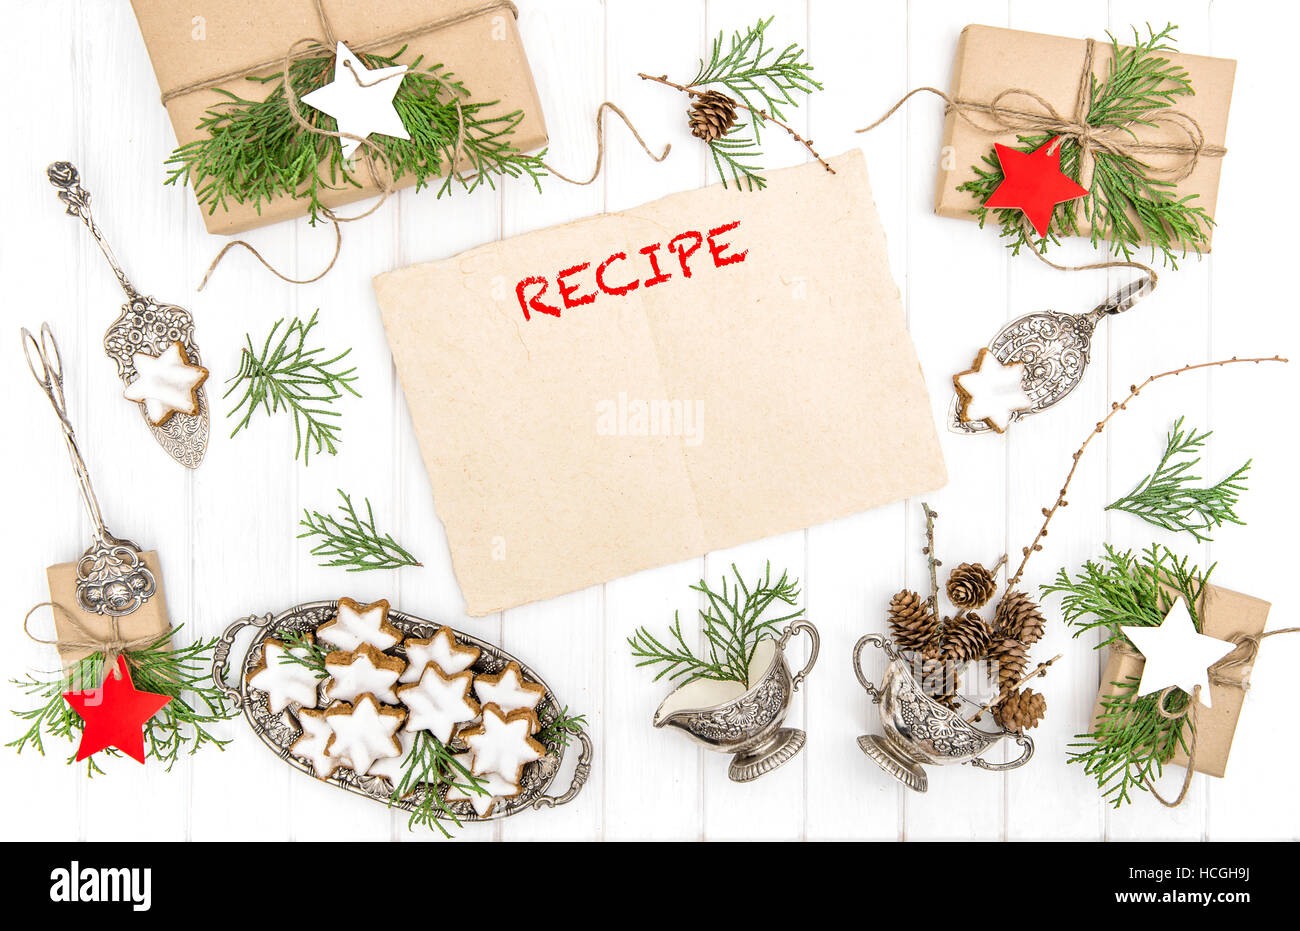 Les biscuits de Noël, cadeaux et feuille de papier pour la recette. Décoration de fête. Vintage de couverts. Mise à plat Banque D'Images